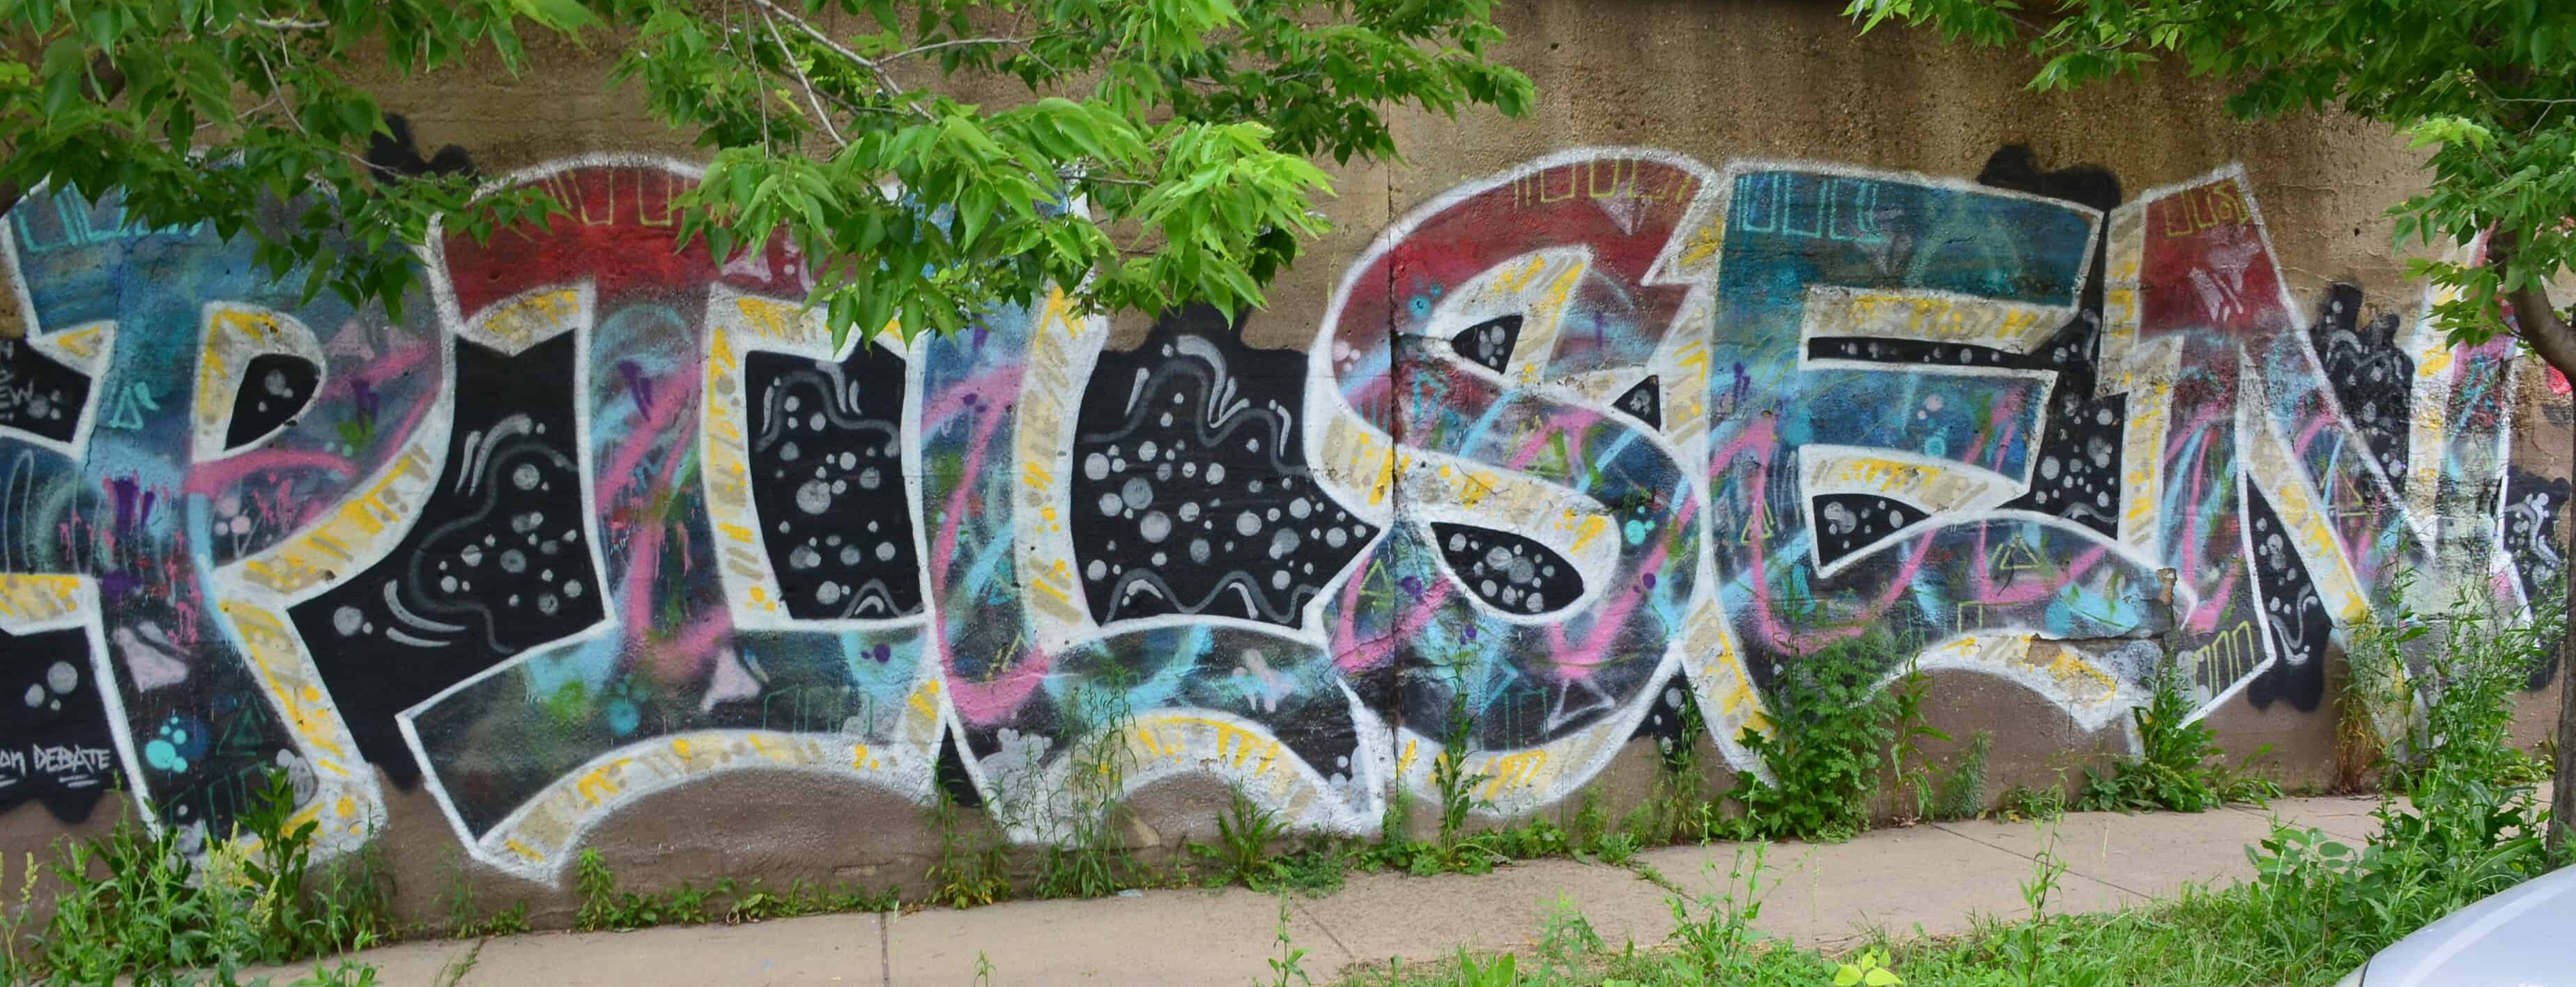 Pilsen mural between Ashland and Paulina in Pilsen, Chicago, Illinois